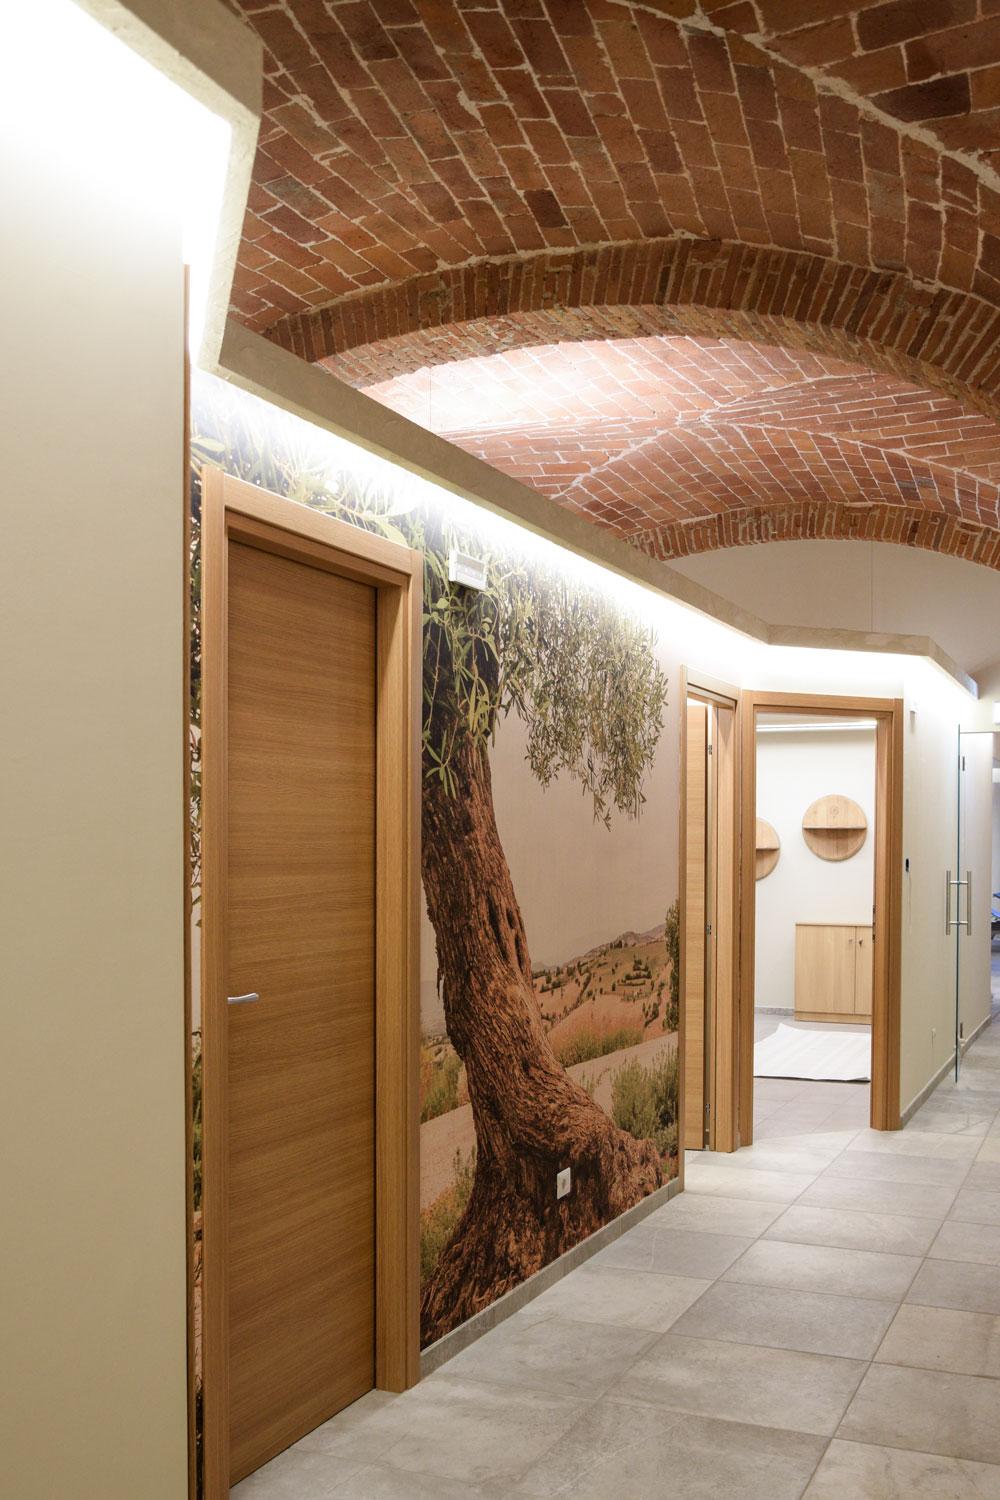 Corridoio della zona trattamenti con volte in mattoni e pareti rivestite con carta da parati a tema campagna toscana